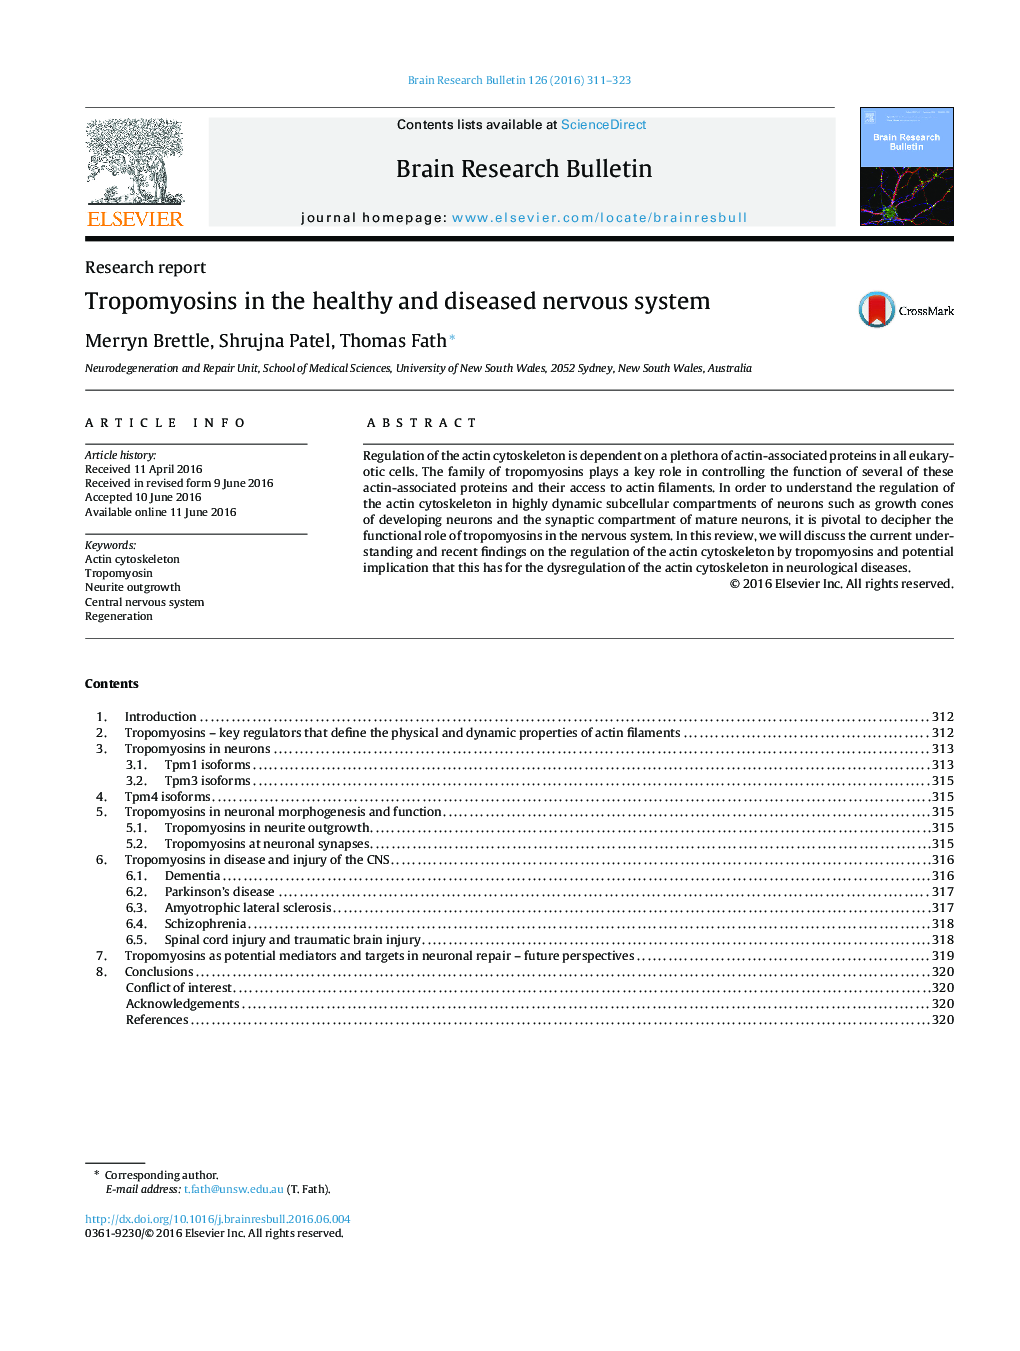 گزارش تحقیقاتی تروپومیوسین در سیستم عصبی سالم و بیمار 